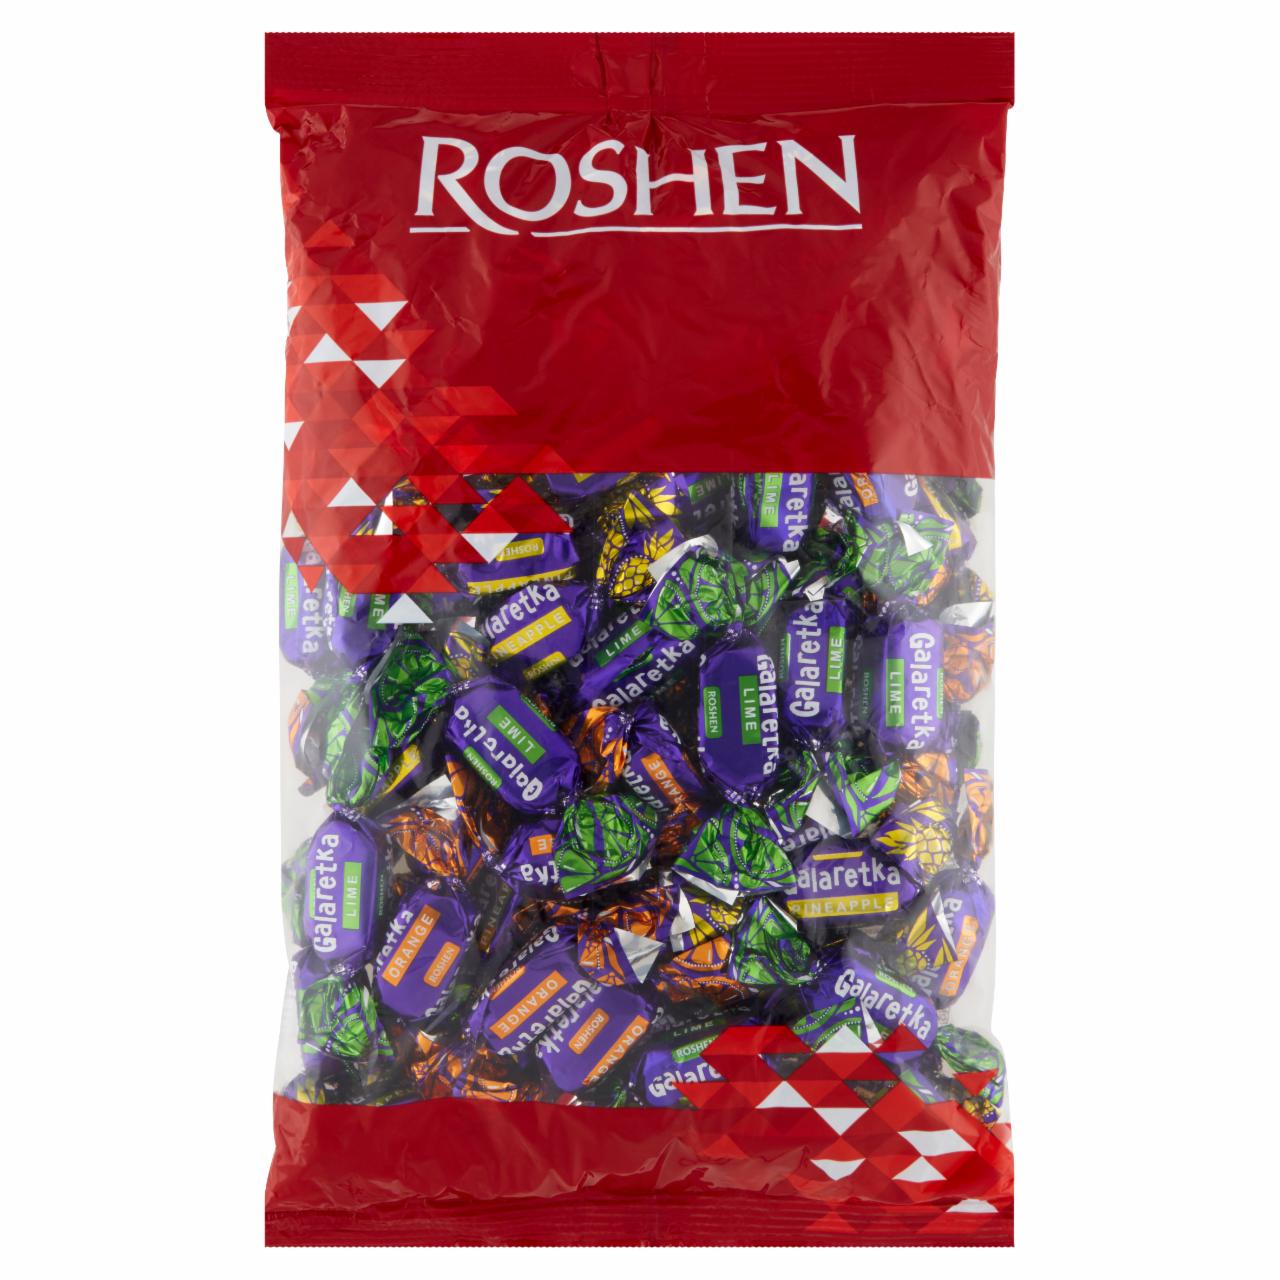 Zdjęcia - Roshen Mieszanka galaretek owocowych w polewie czekoladowej 1 kg